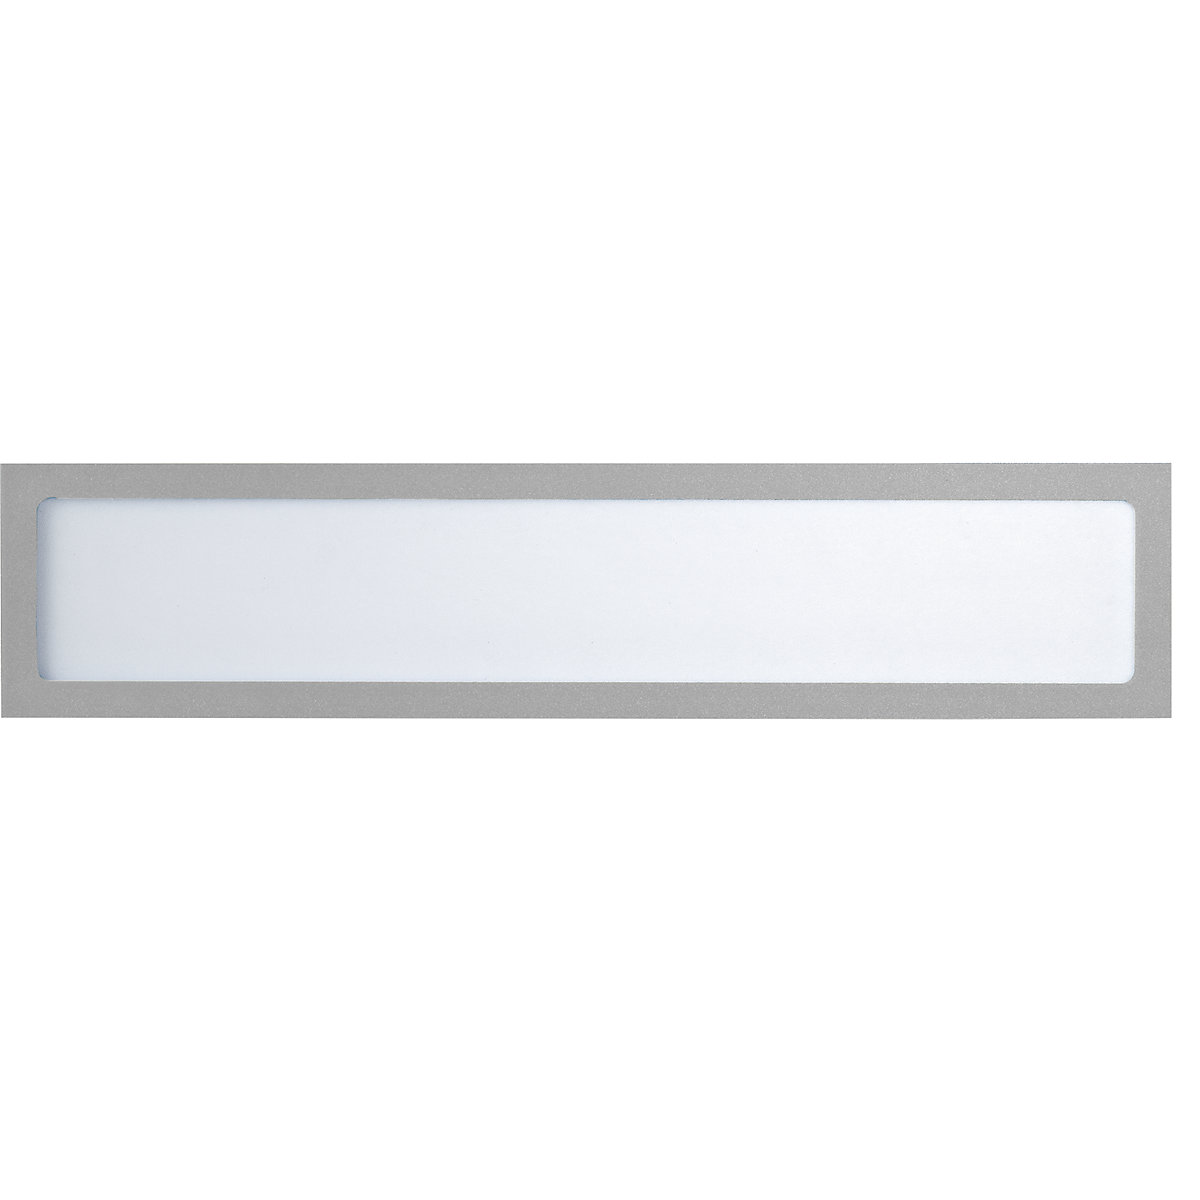 Pochette info magnétique – eurokraft basic, pour inscriptions personnalisées, format A4 horizontal / A5 vertical, 312 x 60 mm, cadre argenté, lot de 10-5